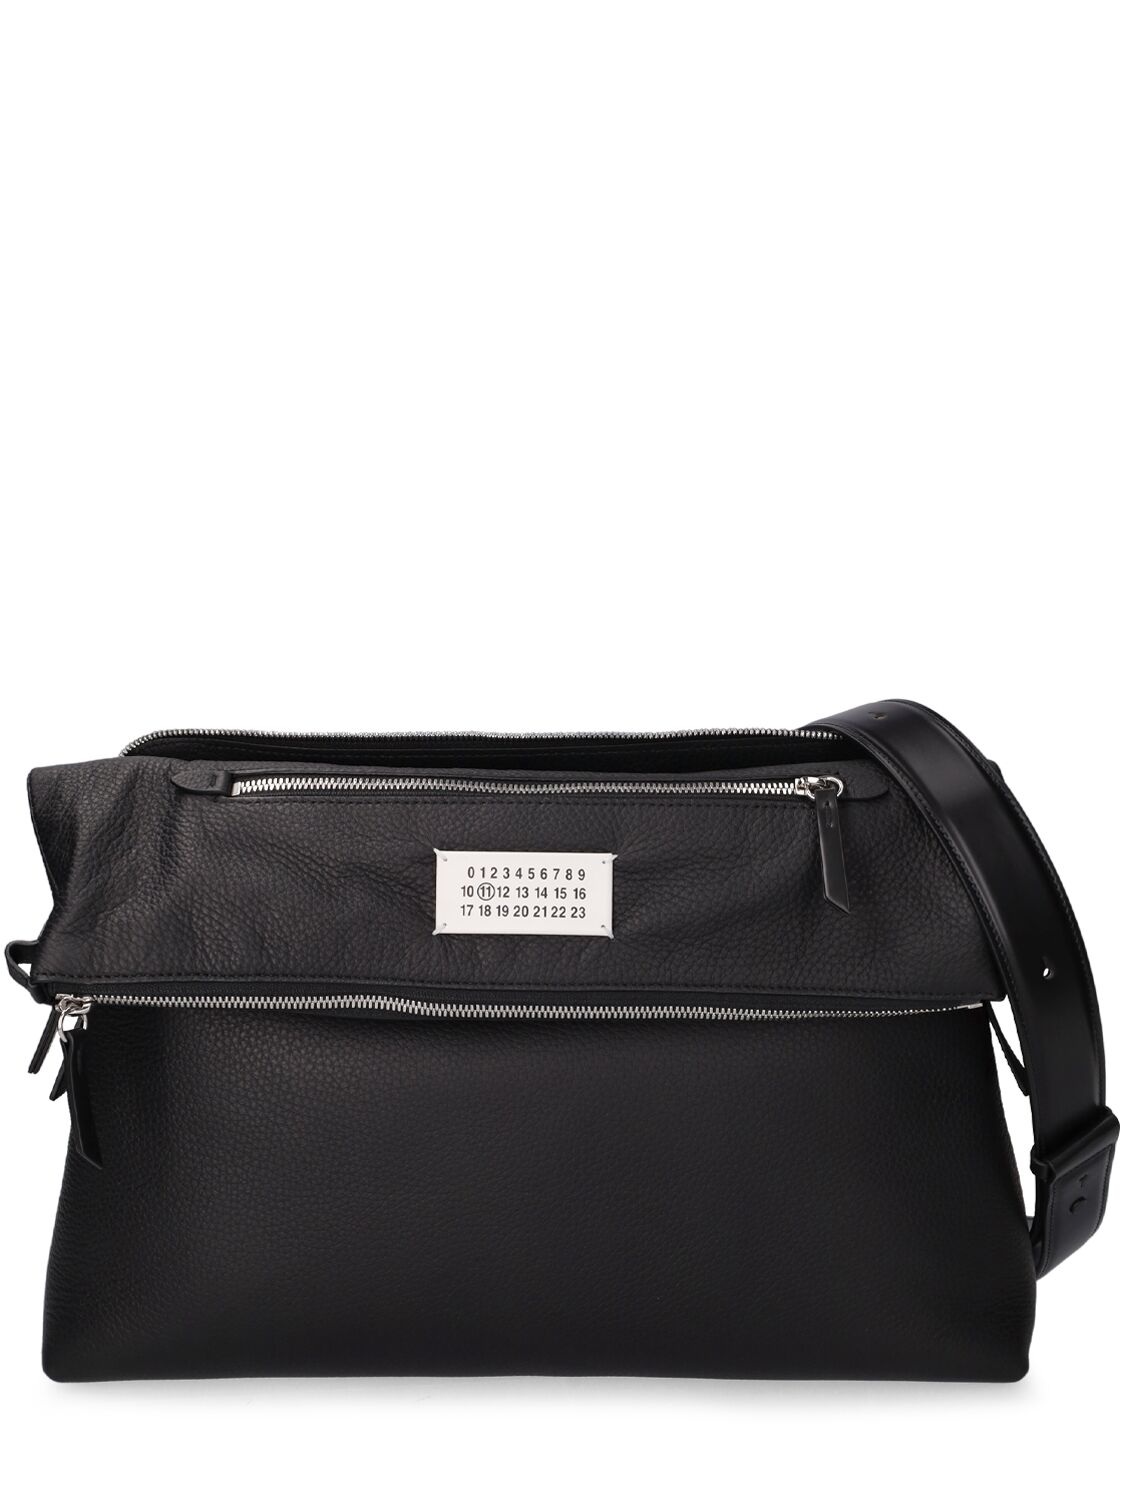 Image of Soft 5ac Large Multifunction Leather Bag